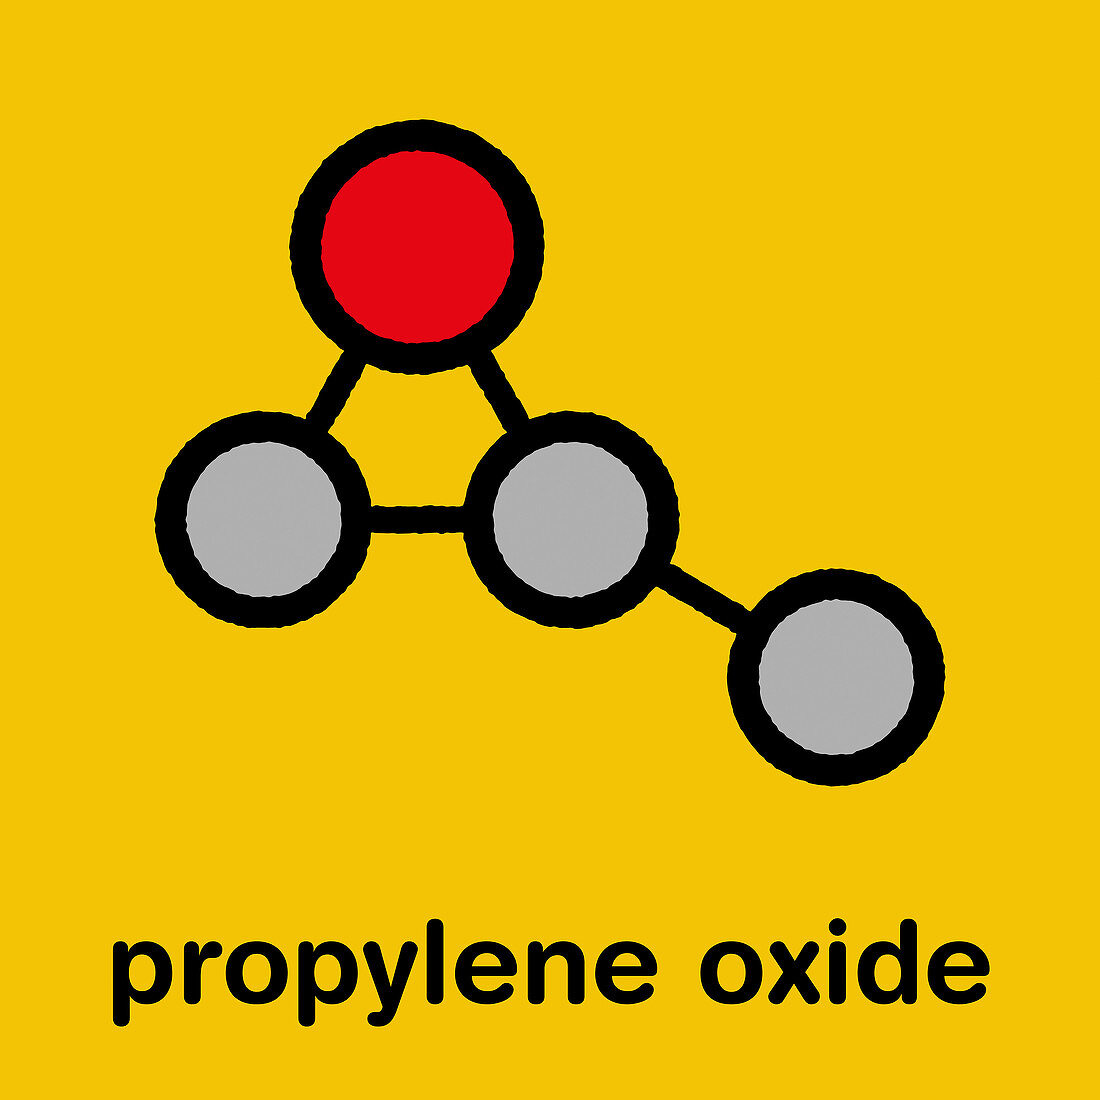 Propylene oxide molecule